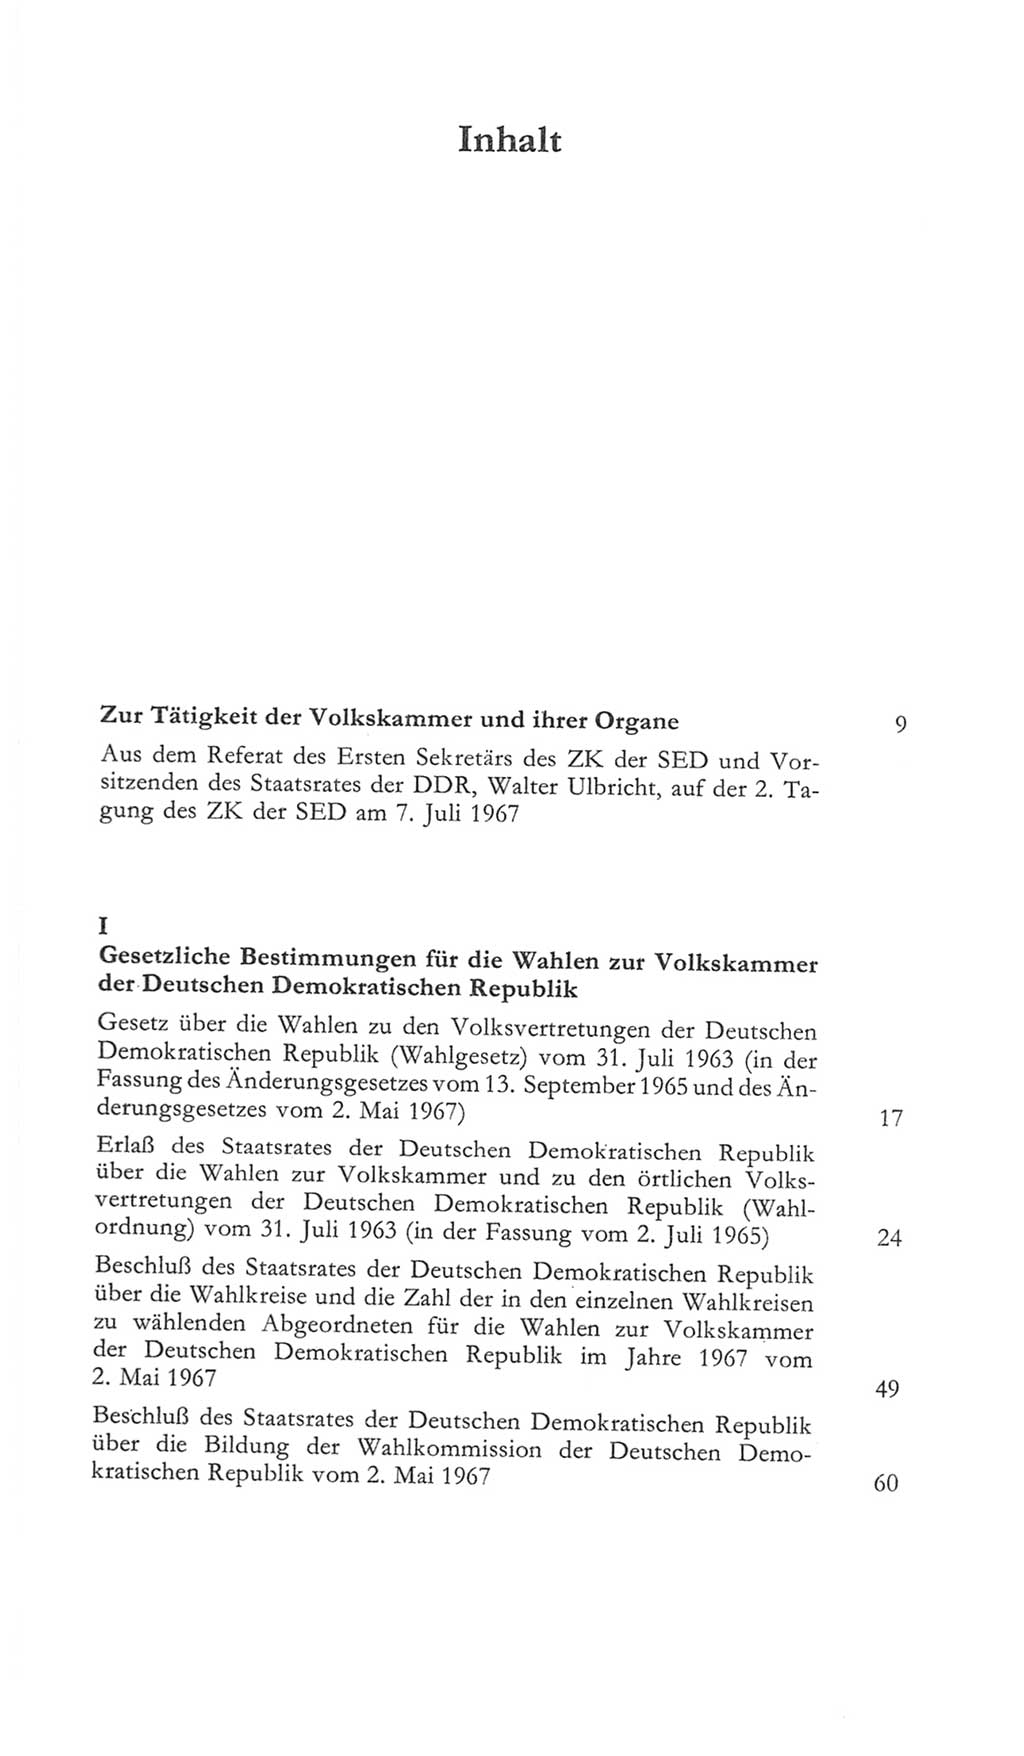 Volkskammer (VK) der Deutschen Demokratischen Republik (DDR) 5. Wahlperiode 1967-1971, Seite 5 (VK. DDR 5. WP. 1967-1971, S. 5)